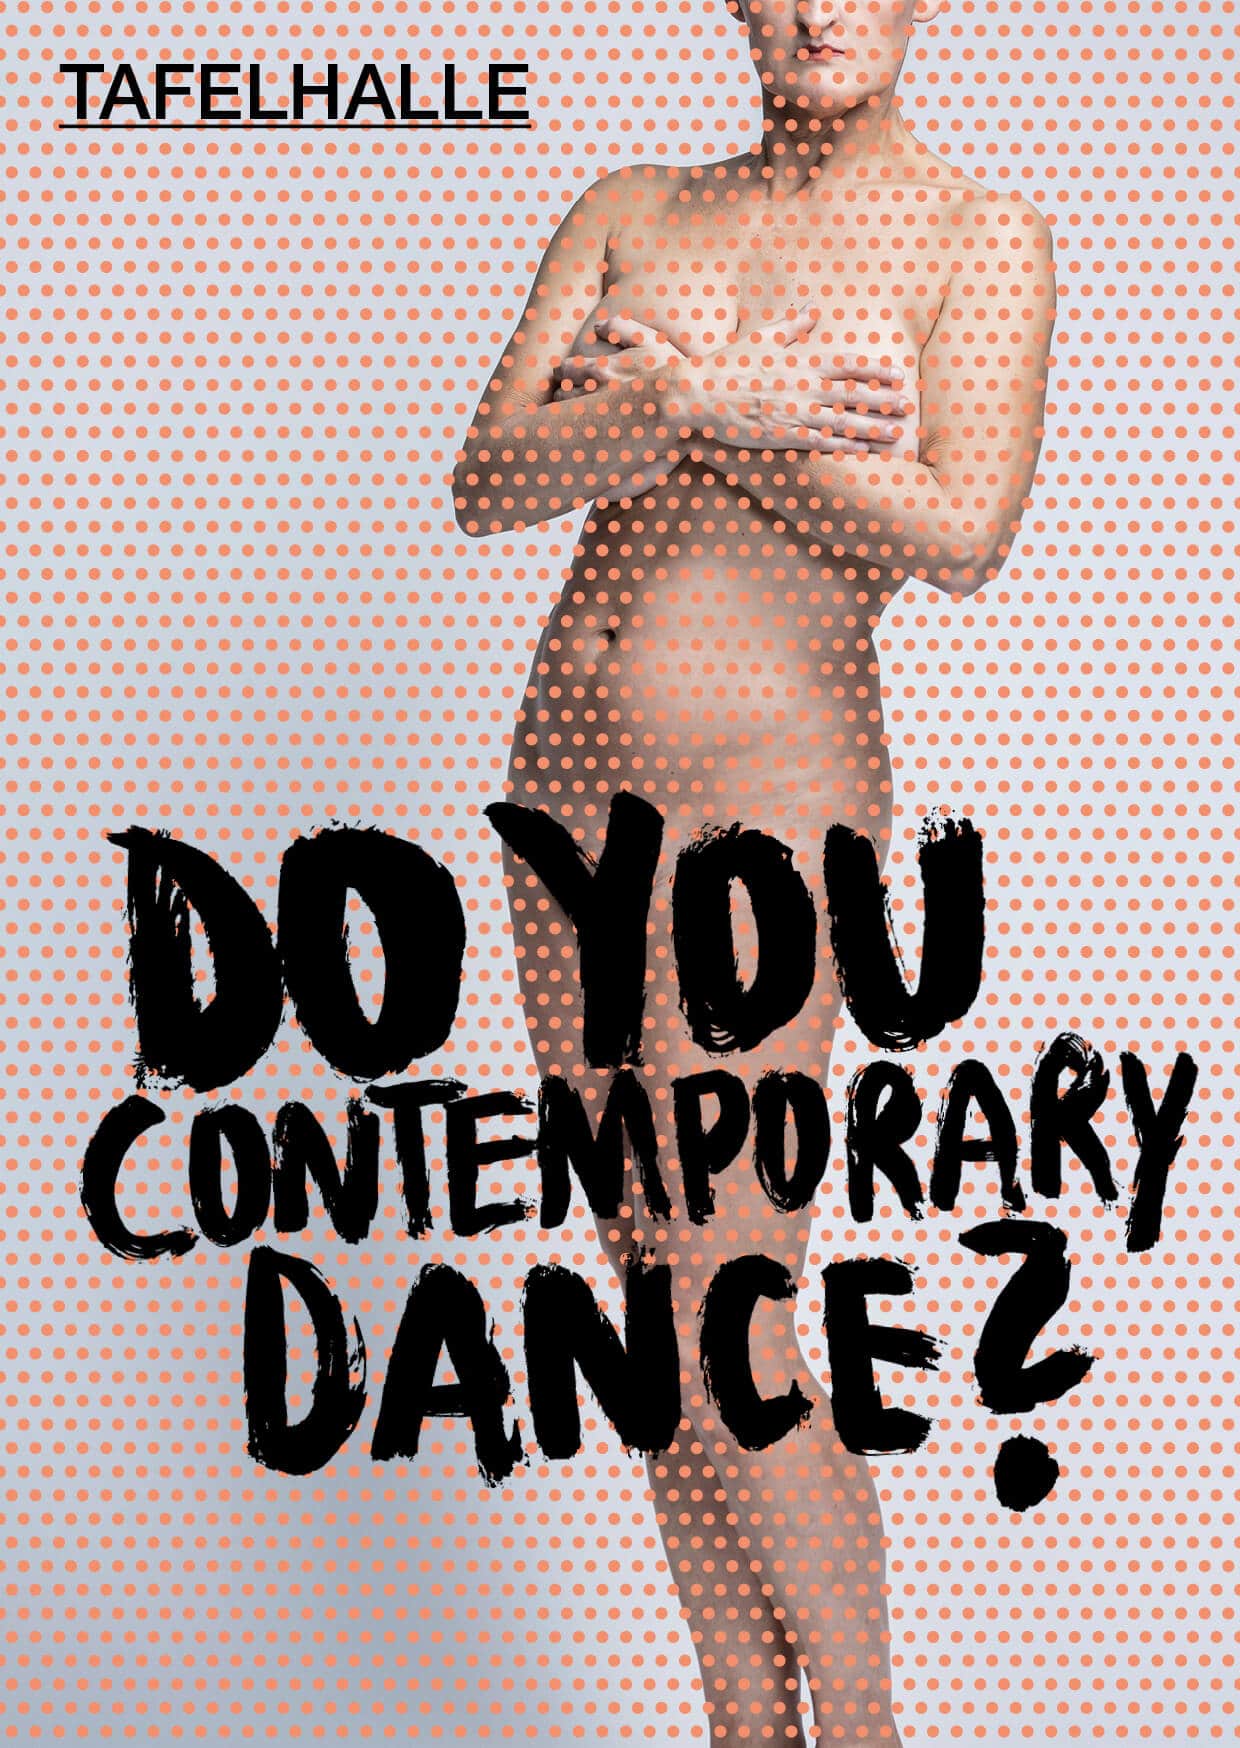 Curtis & Co. - dance affairs feiert am 14.02. mit "Do you contemporary dance?" Premiere in der Tafelhalle. Interview mit Susanna Curtis.